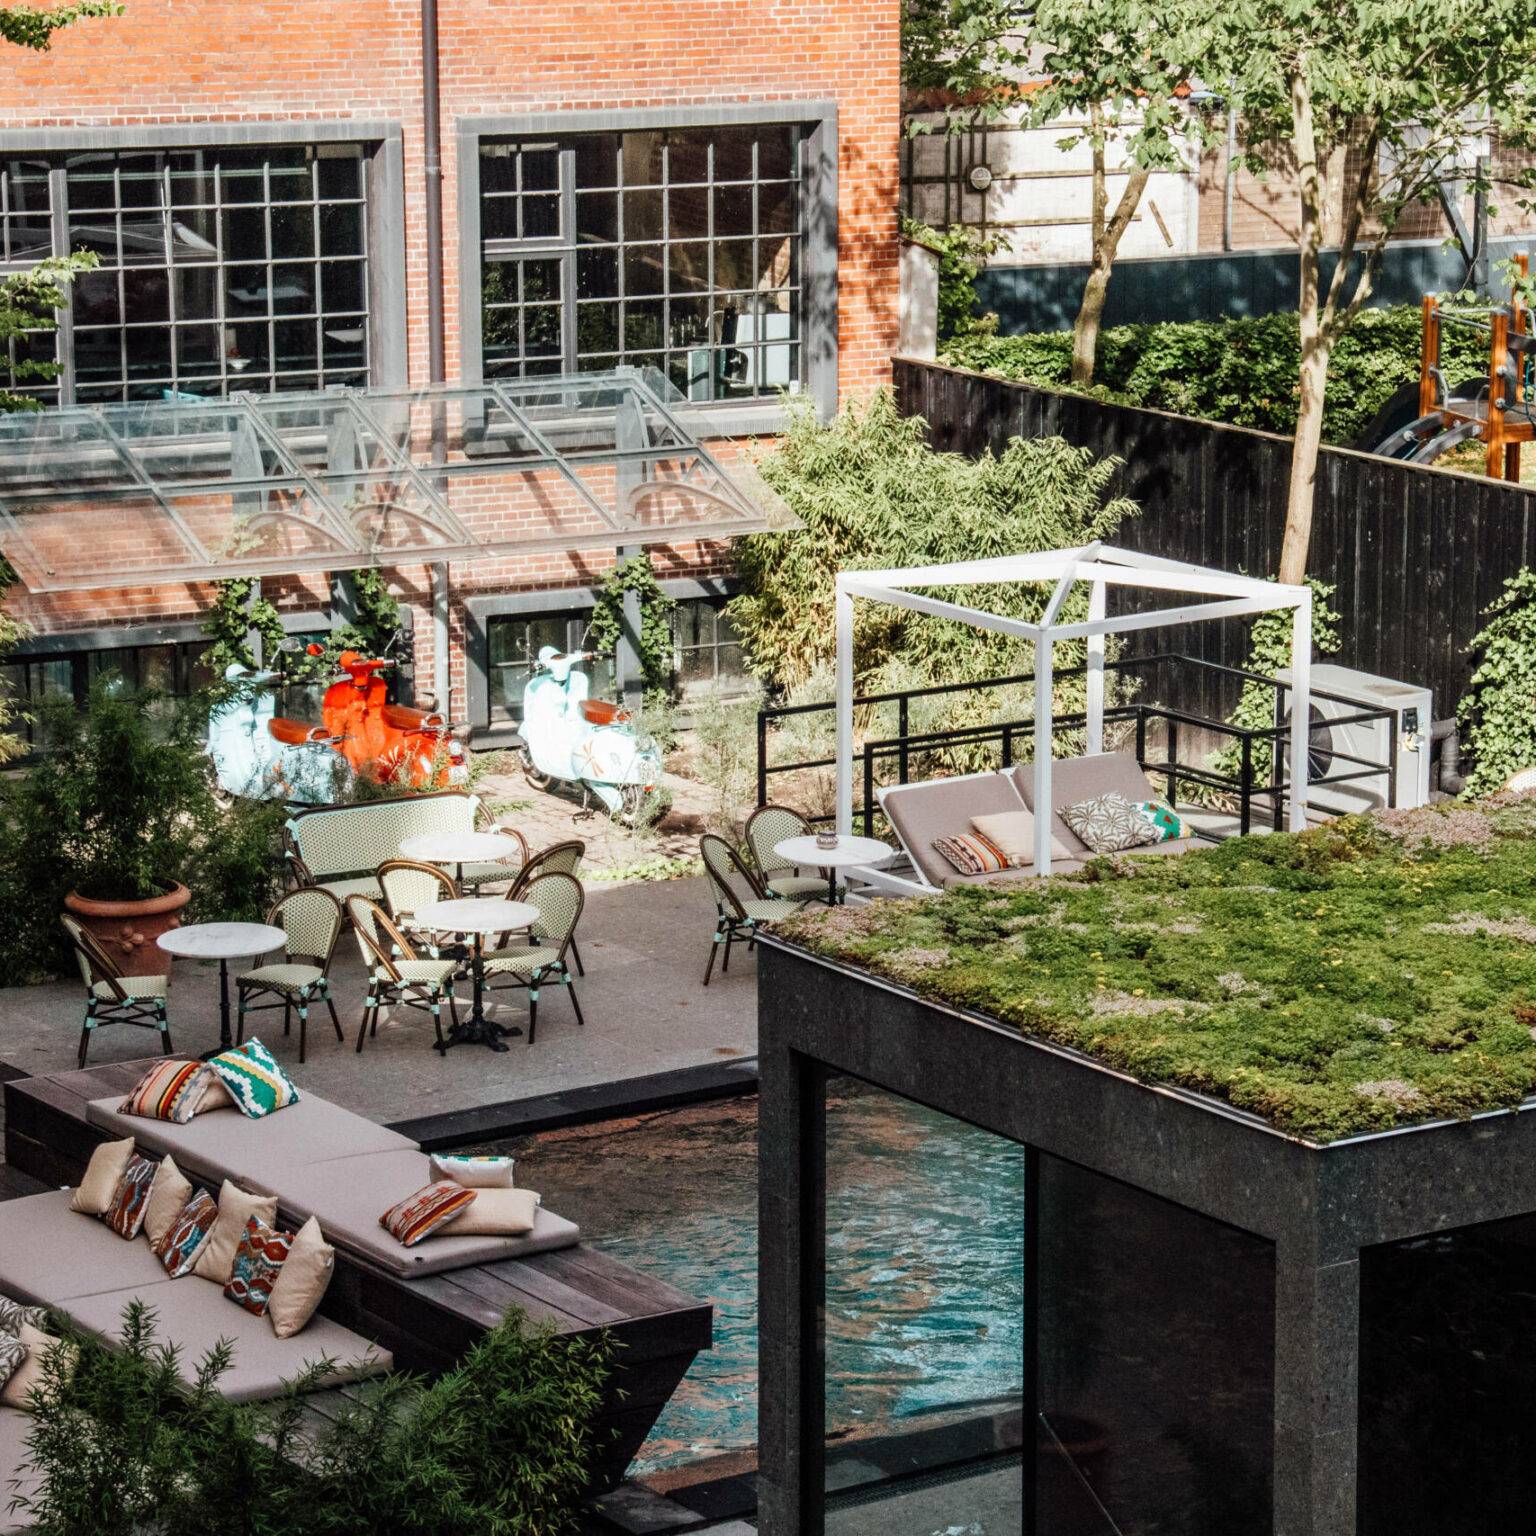 Das nachhaltige Hotel Bryggen Guldsmeden mit Pool und Liegelandschaft im Innenhof ist ein echter Geheimtipp für einen Städtetrip in Kopenhagen.